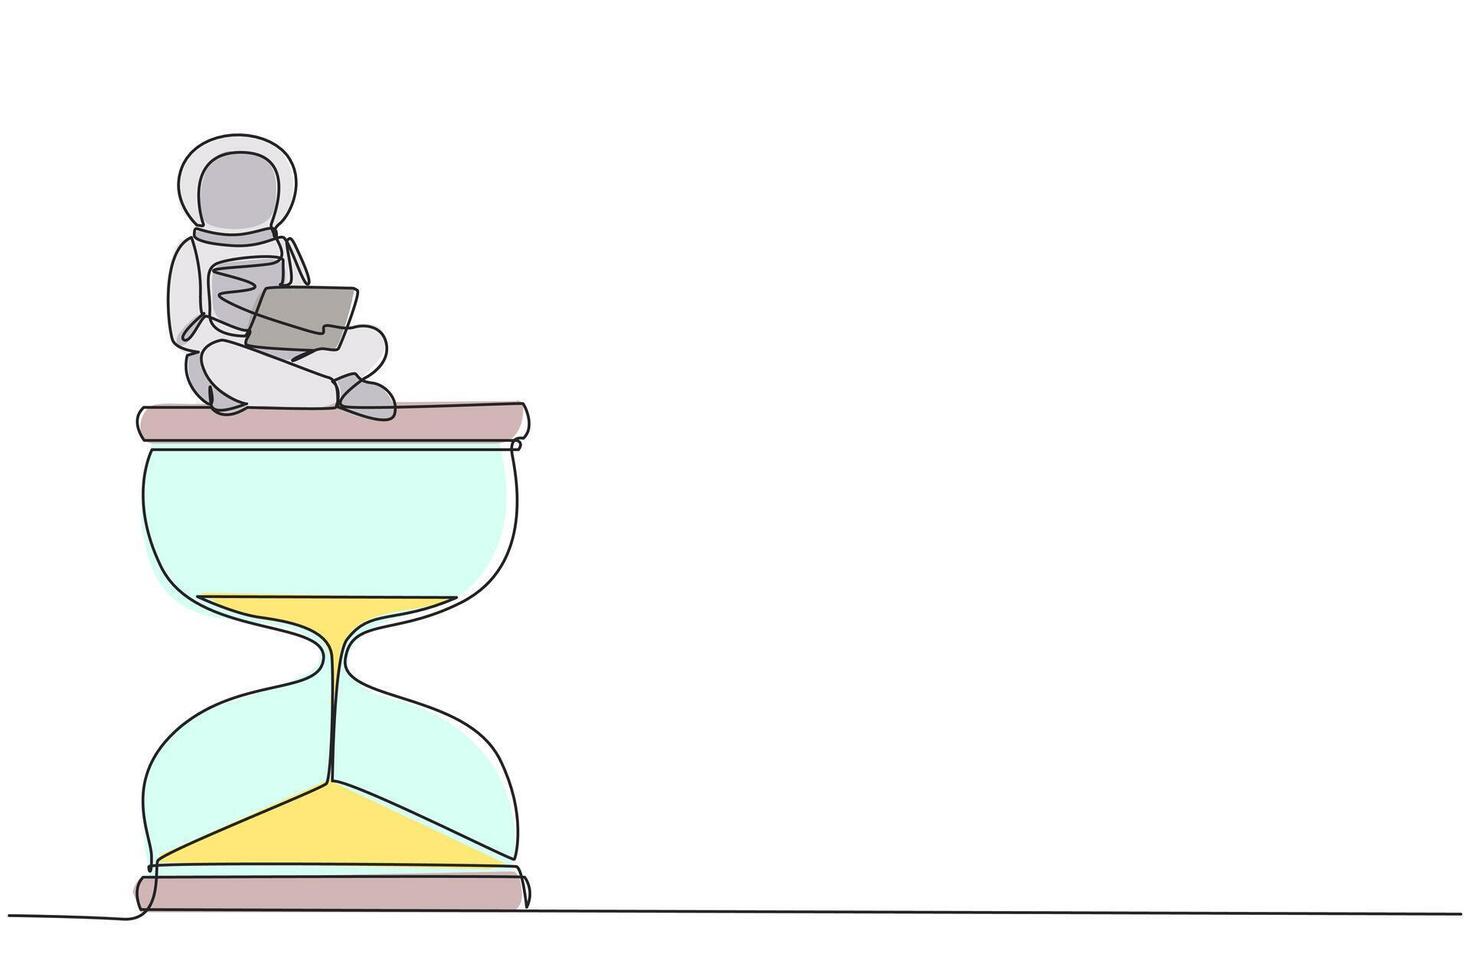 soltero continuo línea dibujo joven energético astronauta sentado en gigante reloj de arena mecanografía ordenador portátil. cuenta regresiva Hasta que el hora a regreso a tierra llega galaxia cósmico. uno línea vector ilustración